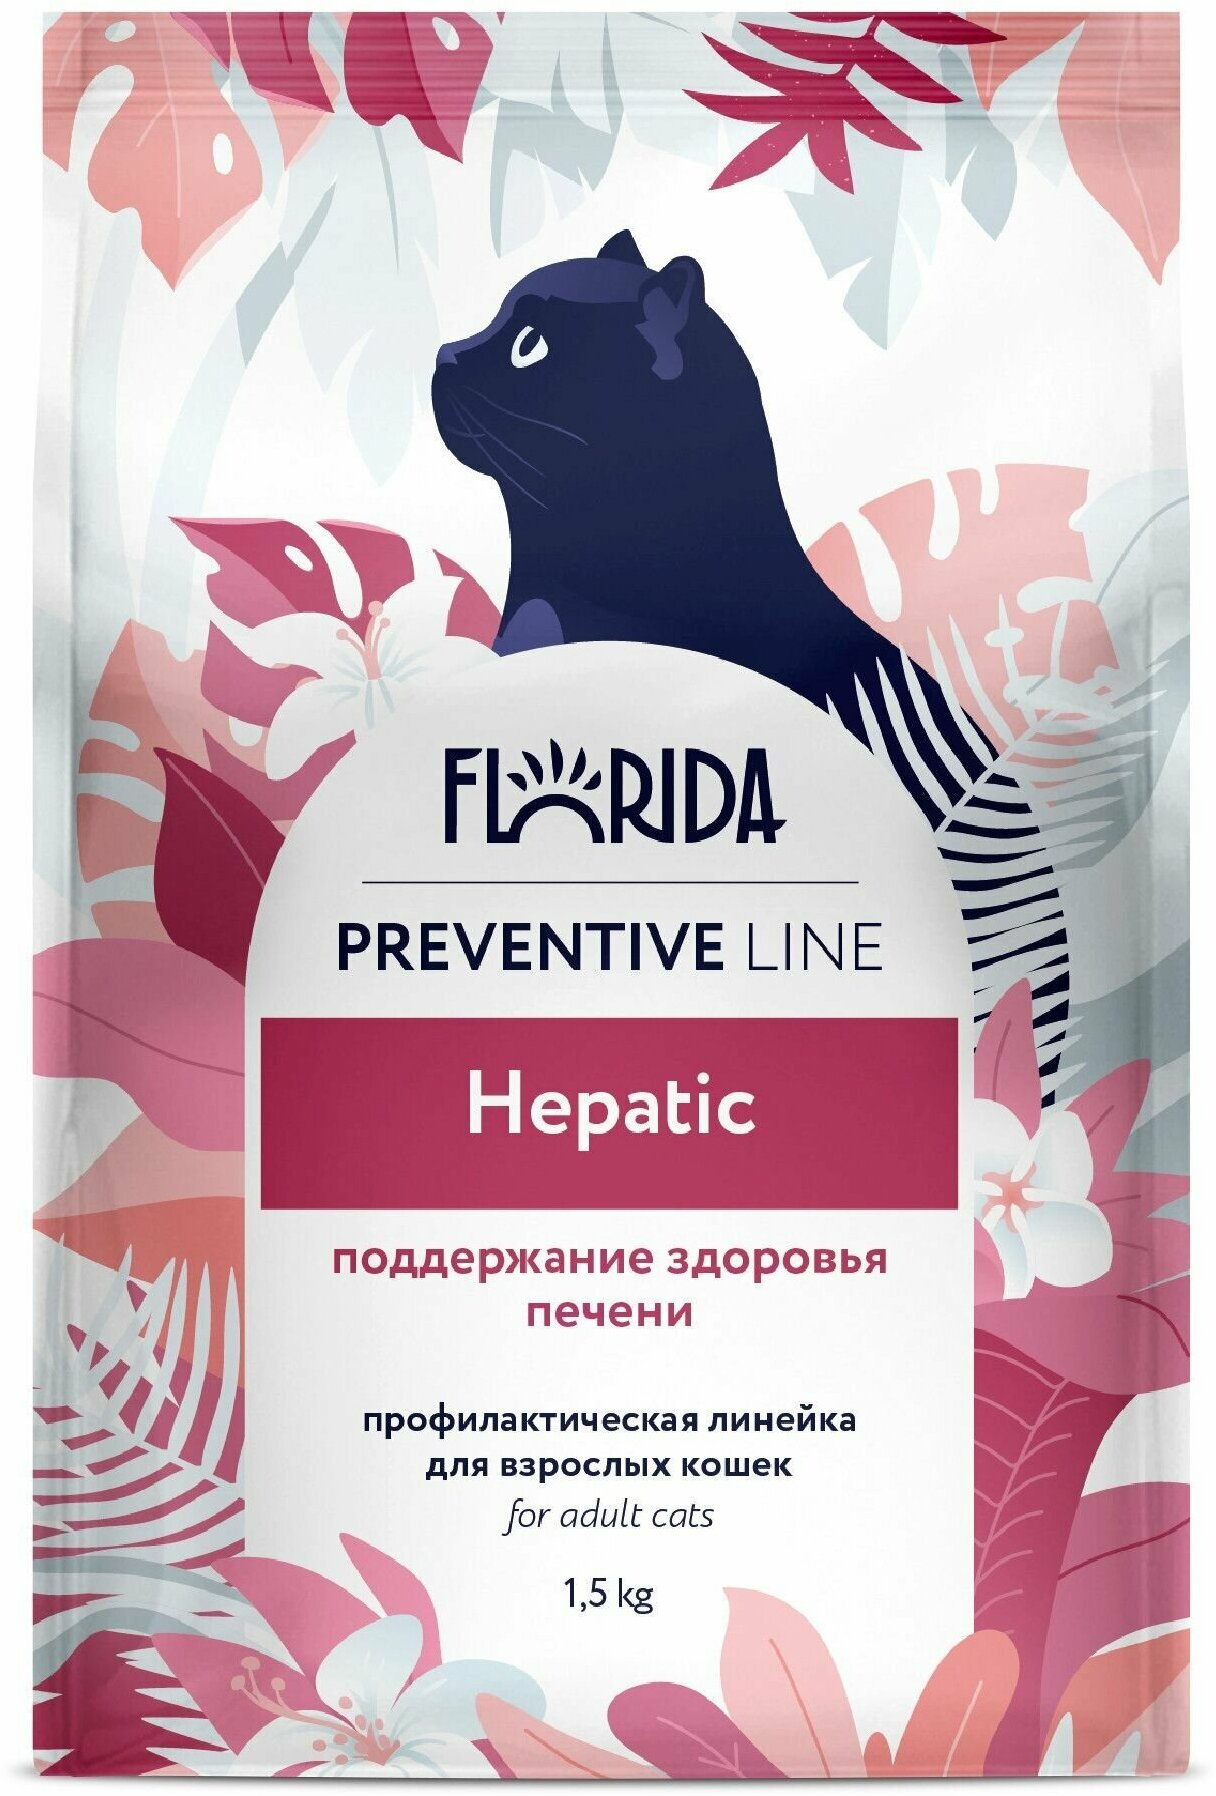 FLORIDA Preventive Line Hepatic Сухой корм для кошек "Поддержание здоровья печени", 1,5кг